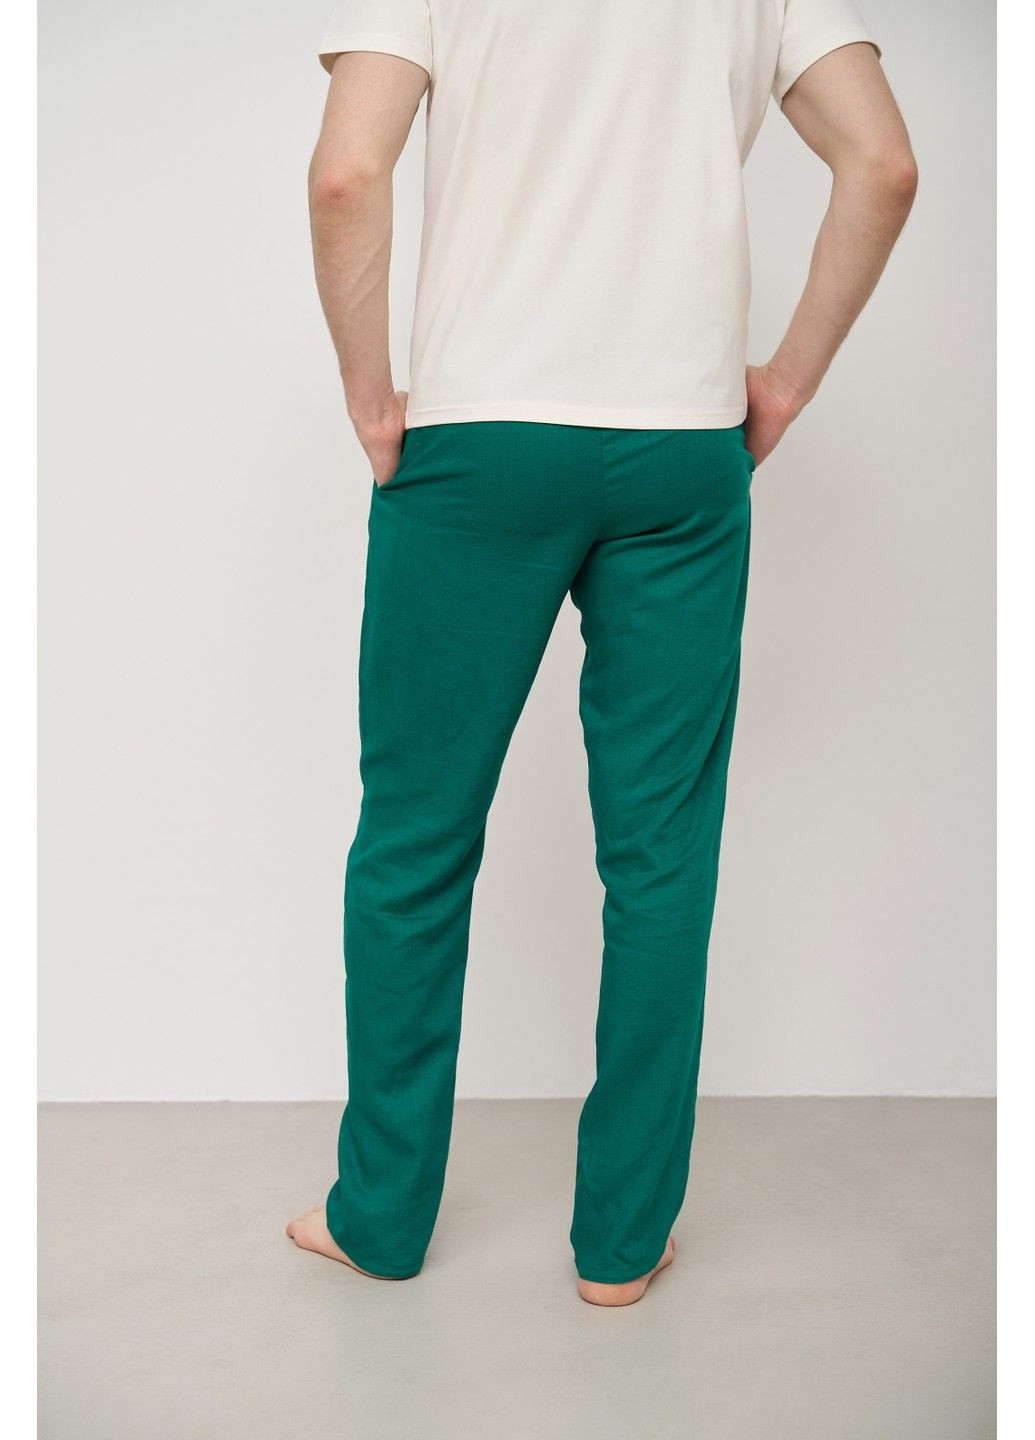 Пижама мужская футболка молочная + штаны лен зеленые Handy Wear (280931912)